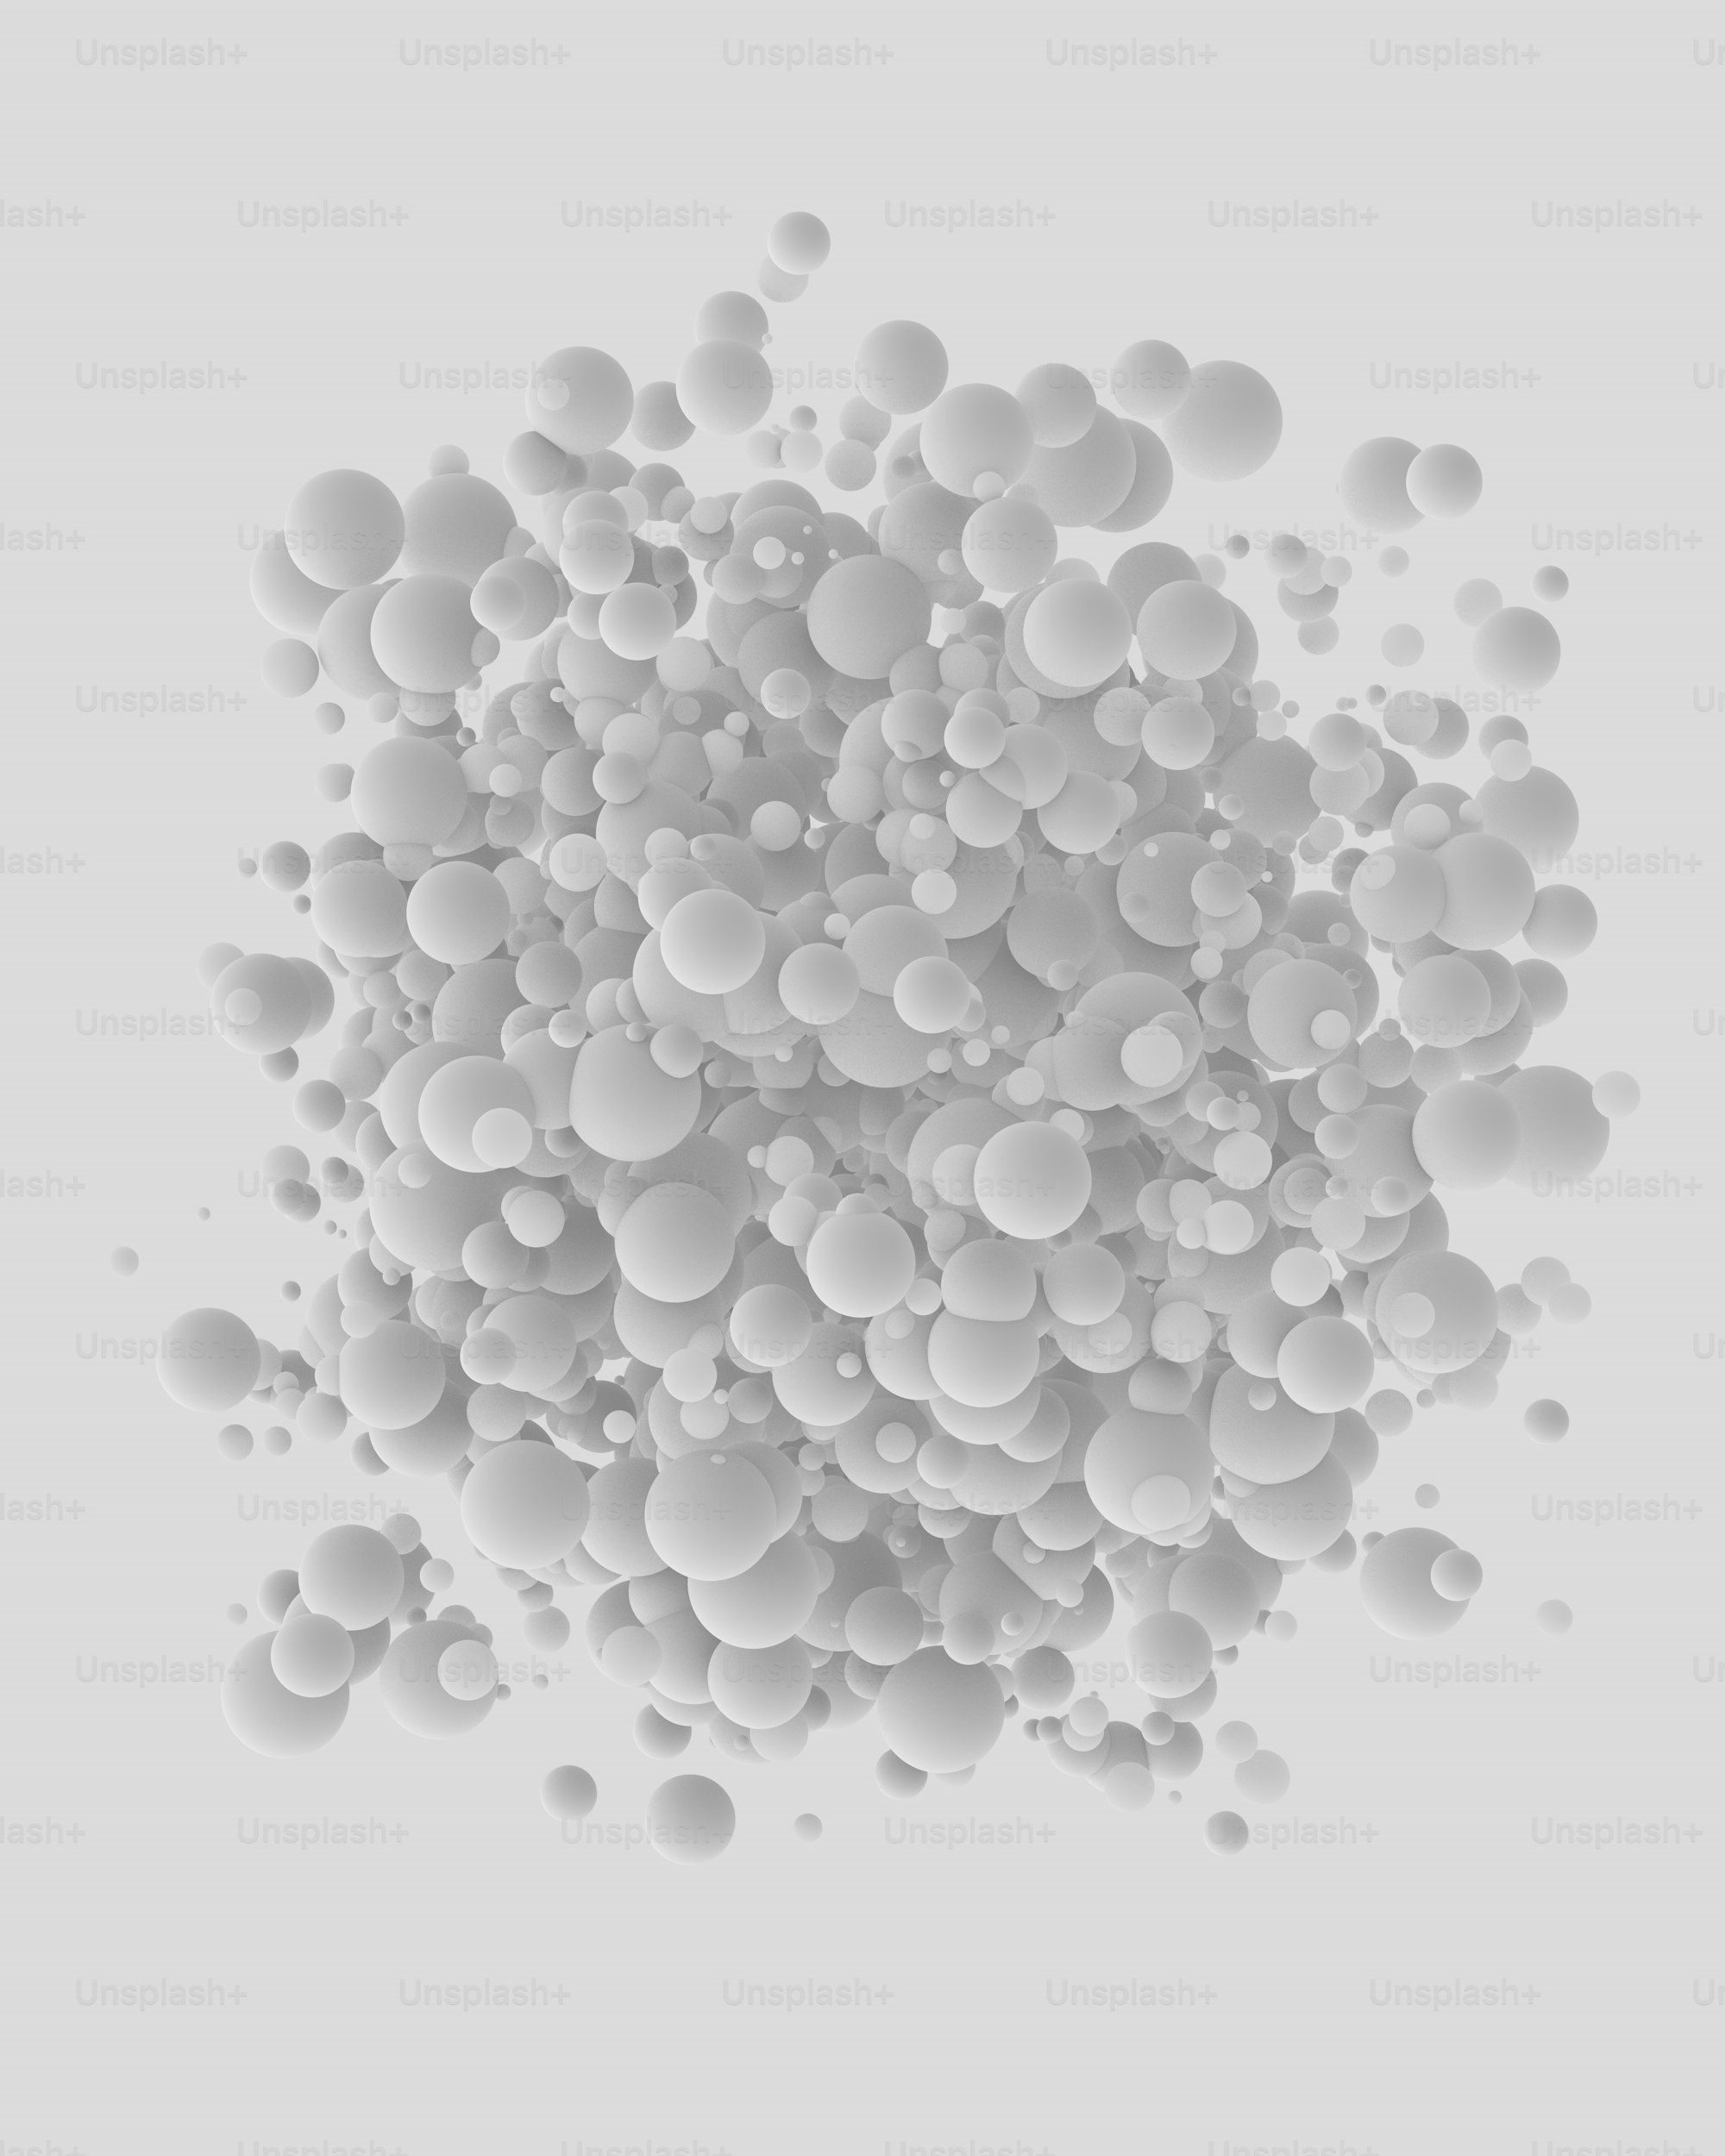 Dimensional : Bubble Explosions - Unsplash+ Production Item #UND-1.017 - RSDB™